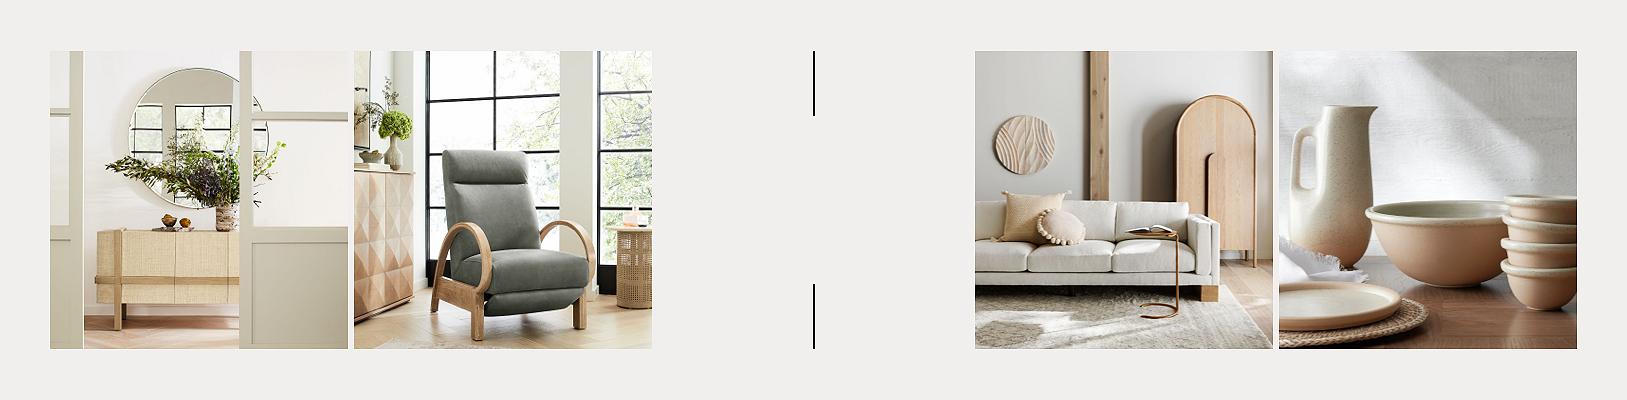 Peaceful Living Room | Crate & Barrel